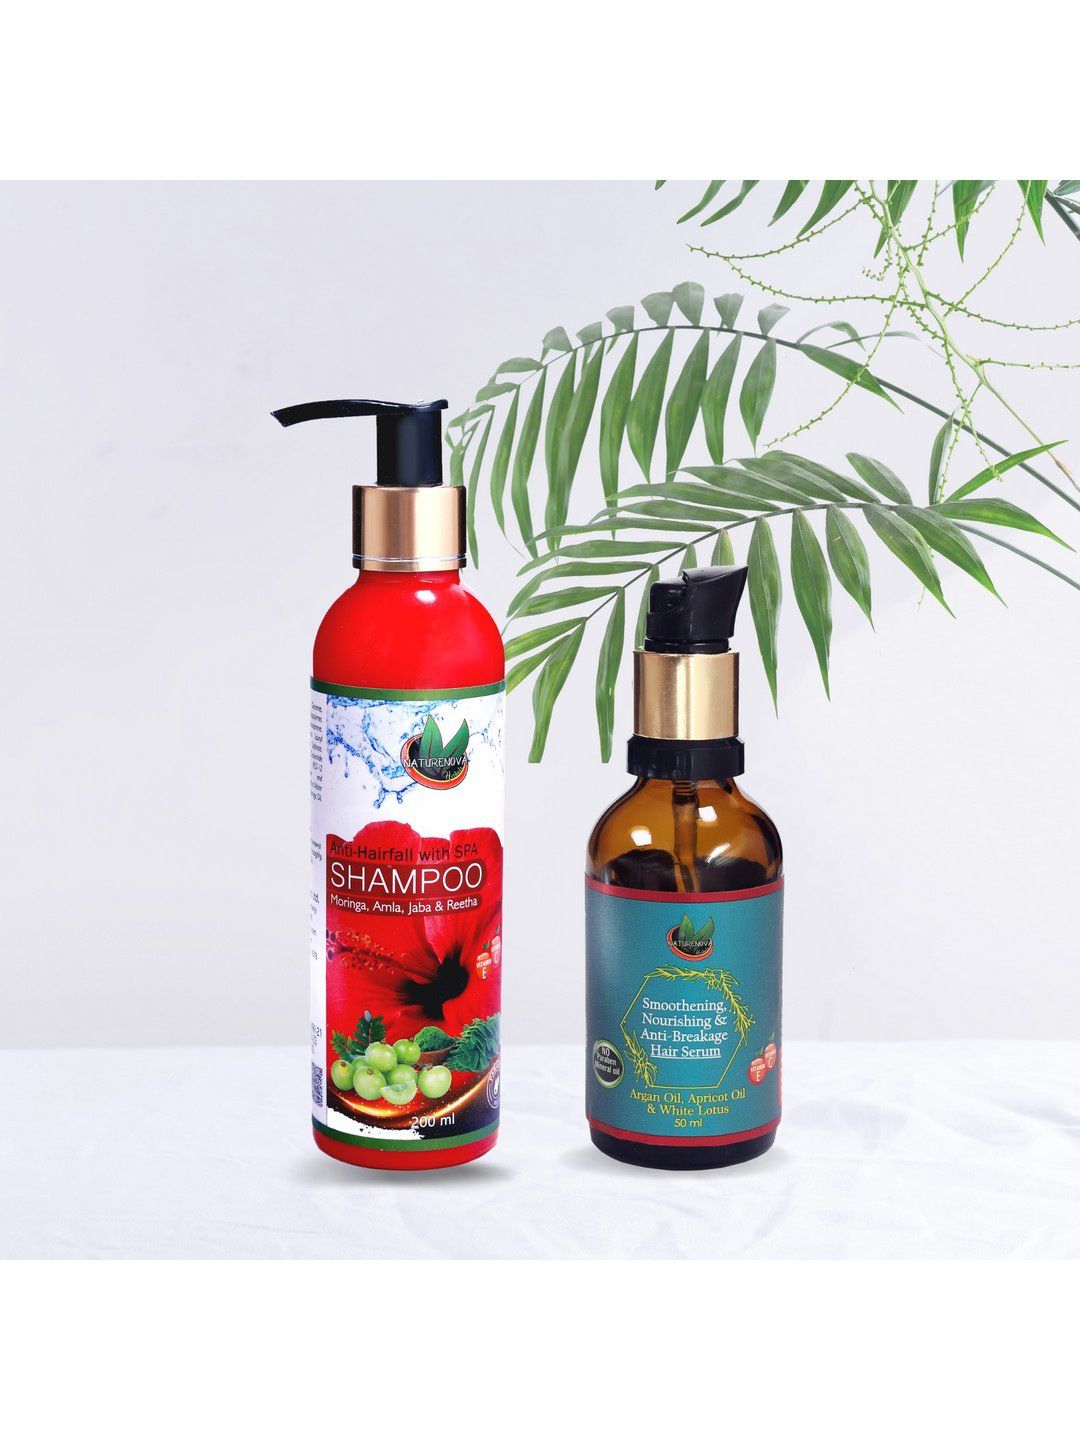 NatureNova Herbals Set of Anti-Hairfall Shampoo 200ml & Anti-Breakage Hair Serum 50ml Price in India